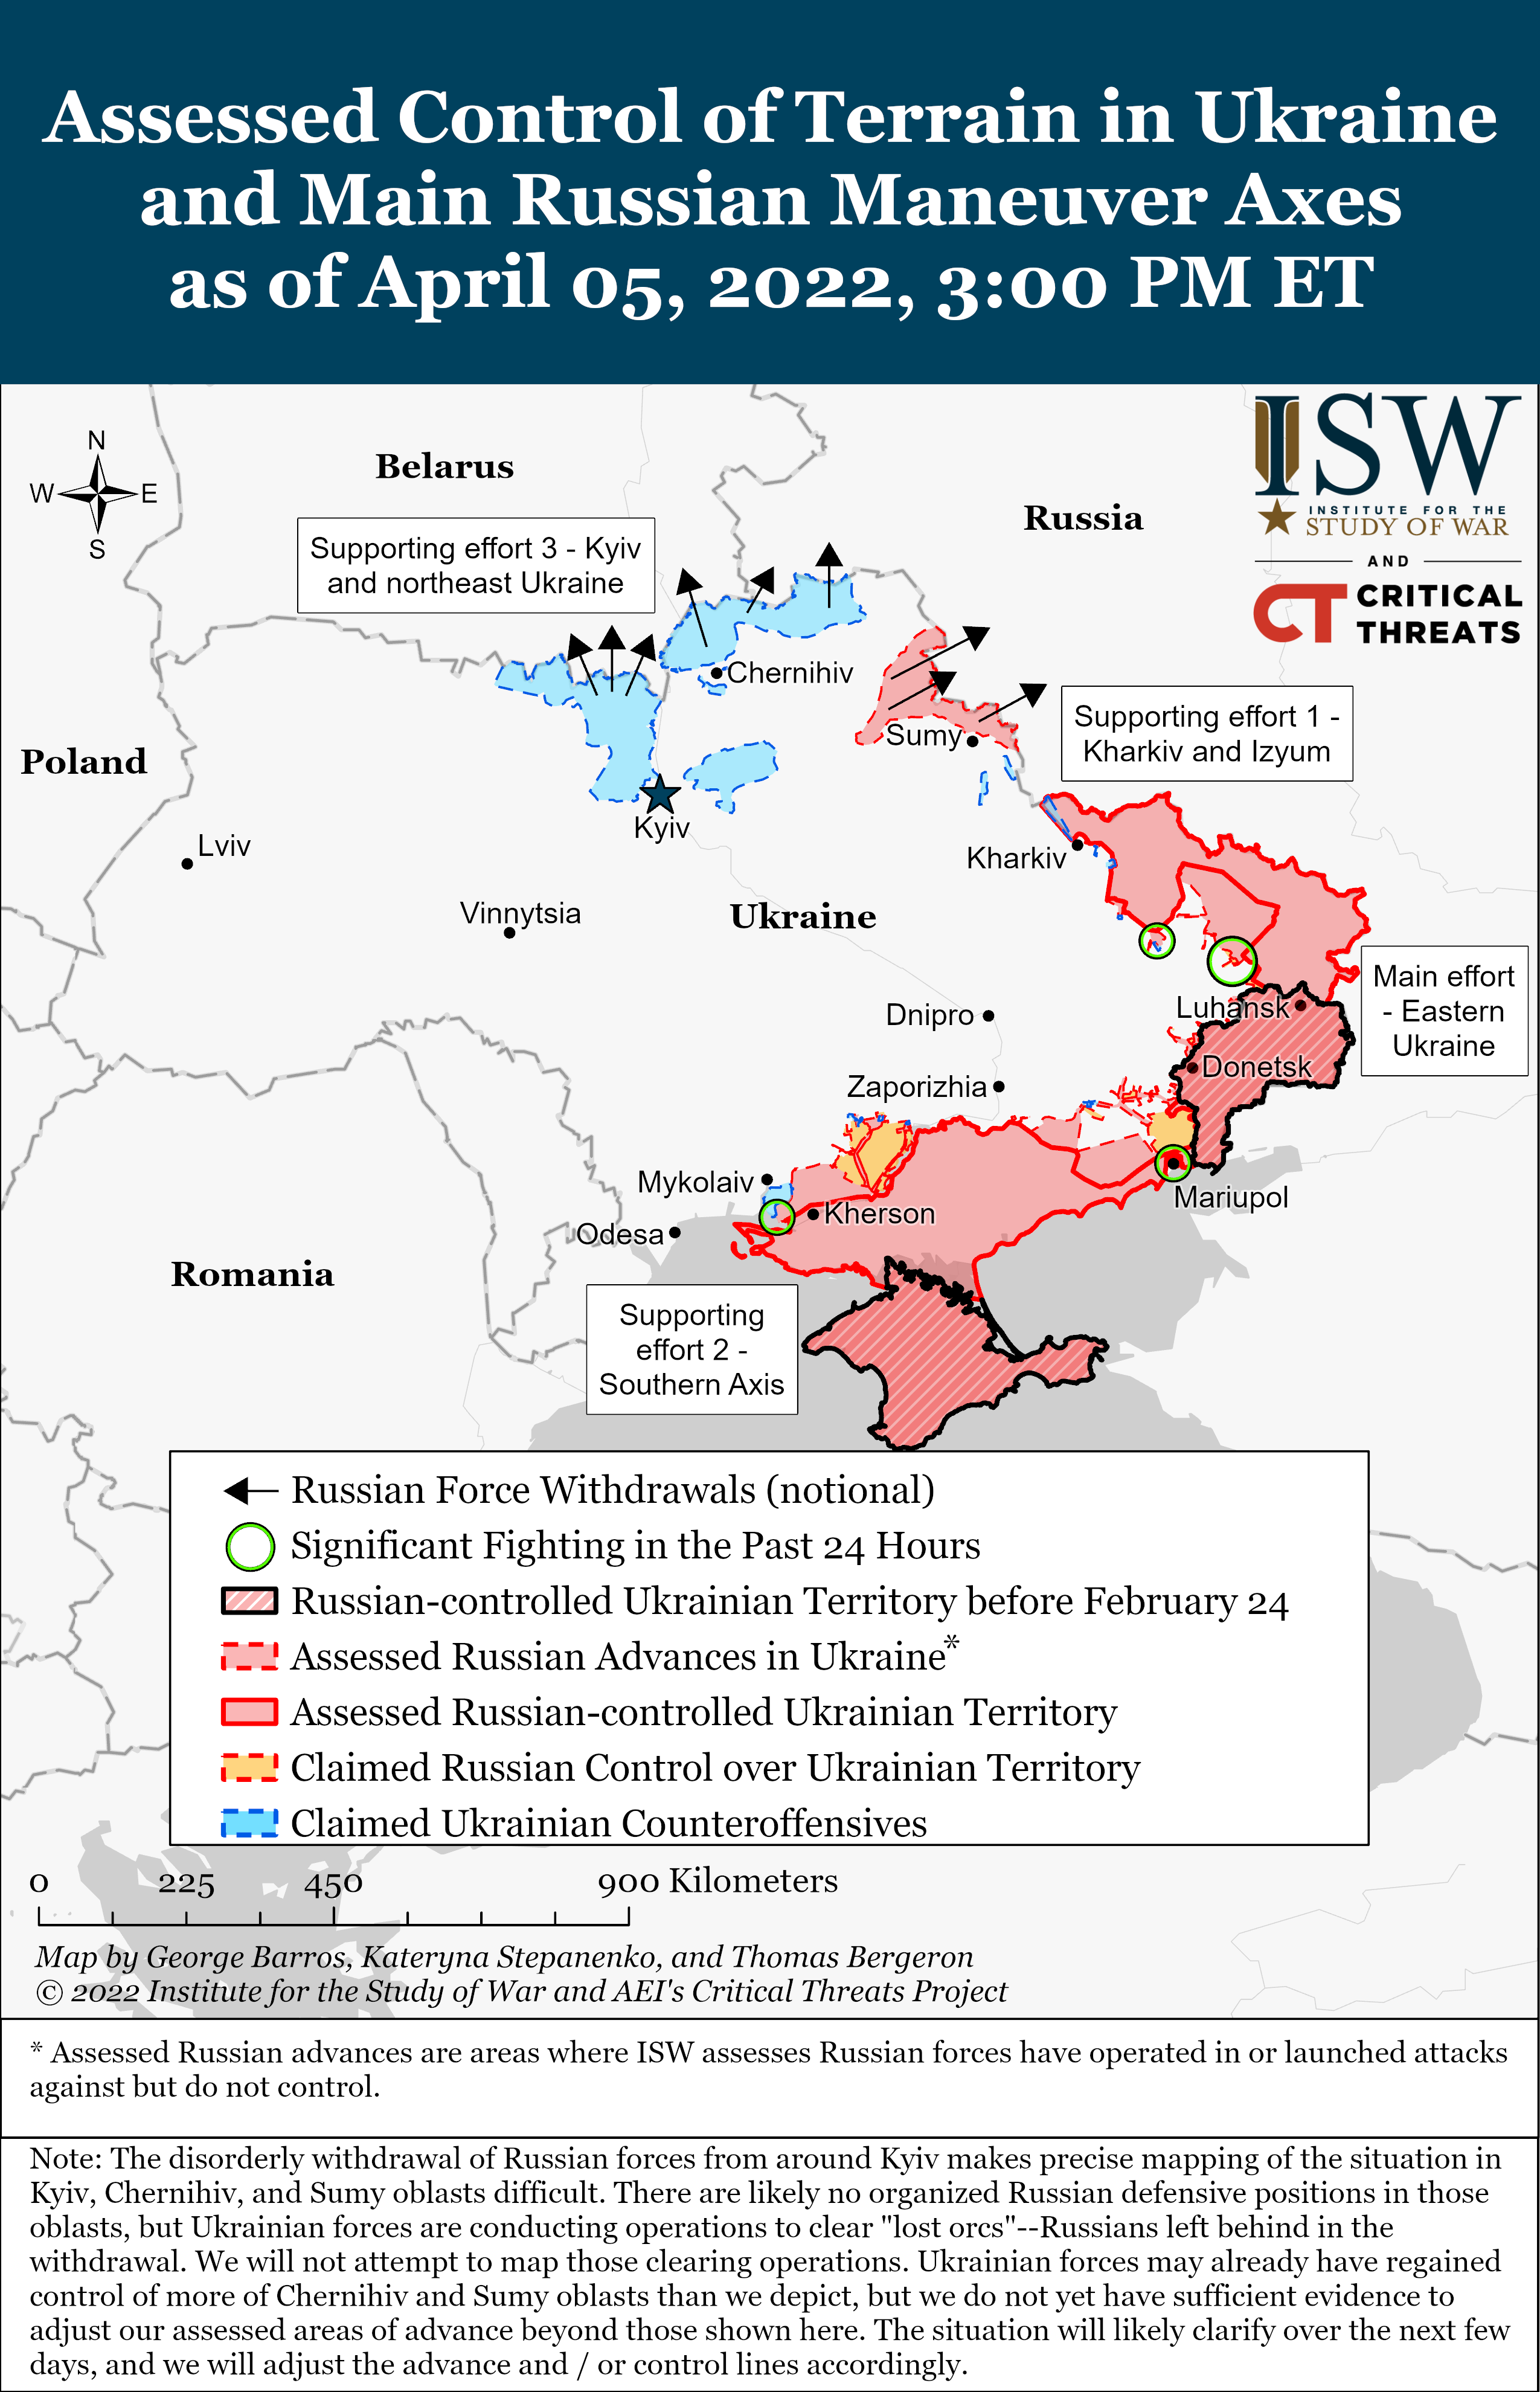 Появилась новая карта боевых действий в Украине от ISW